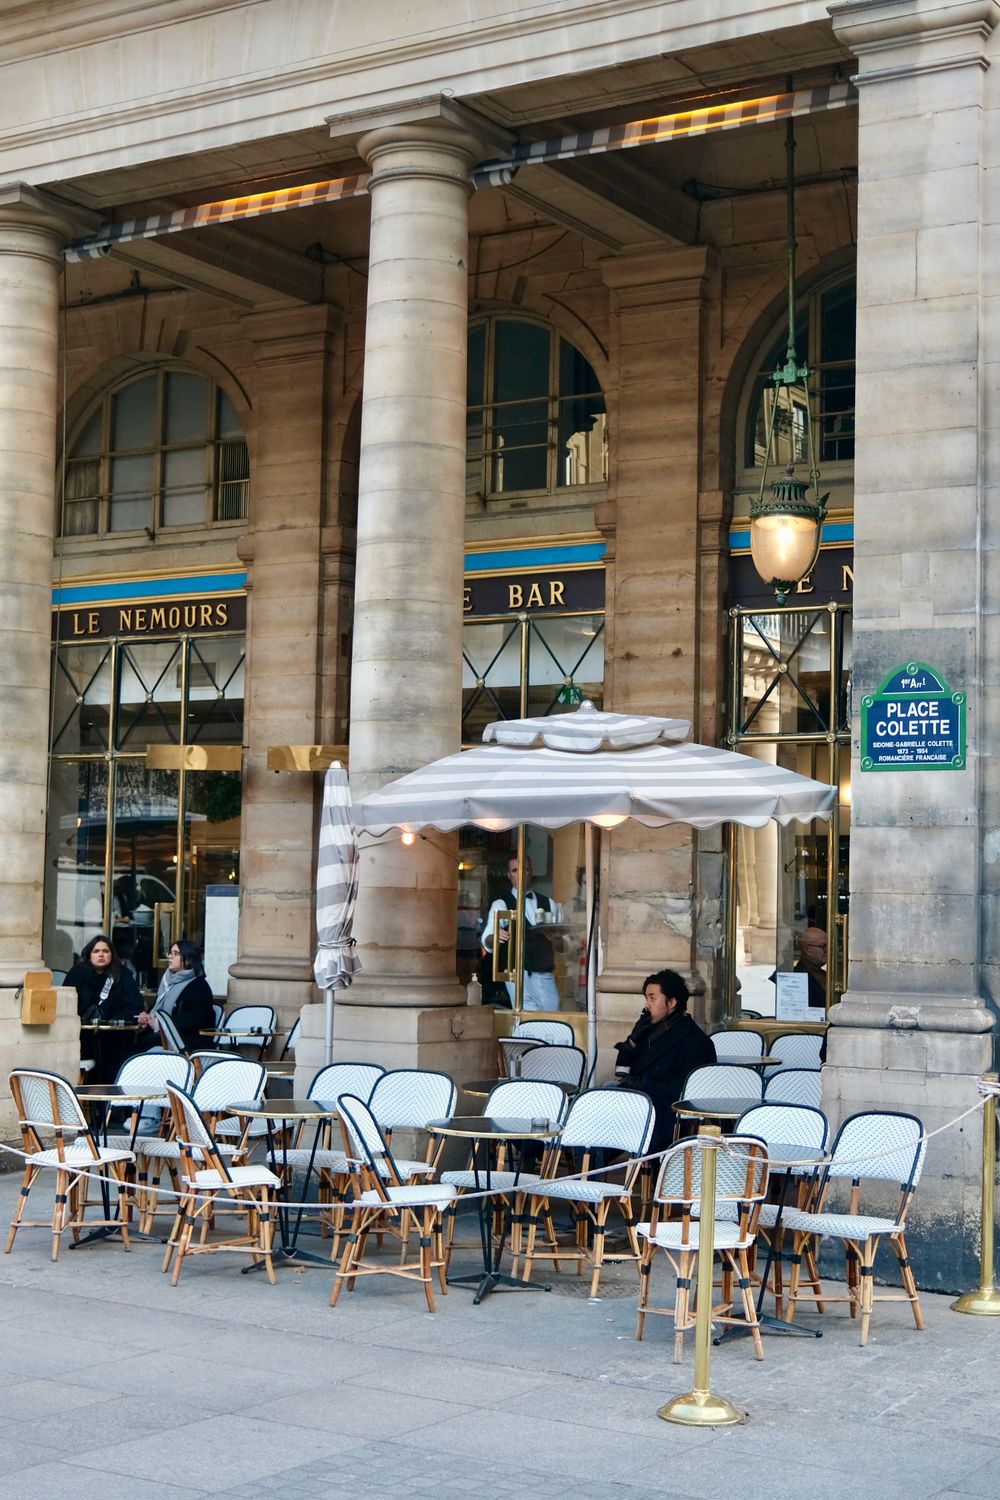 Le Nemours Cafe Paris France